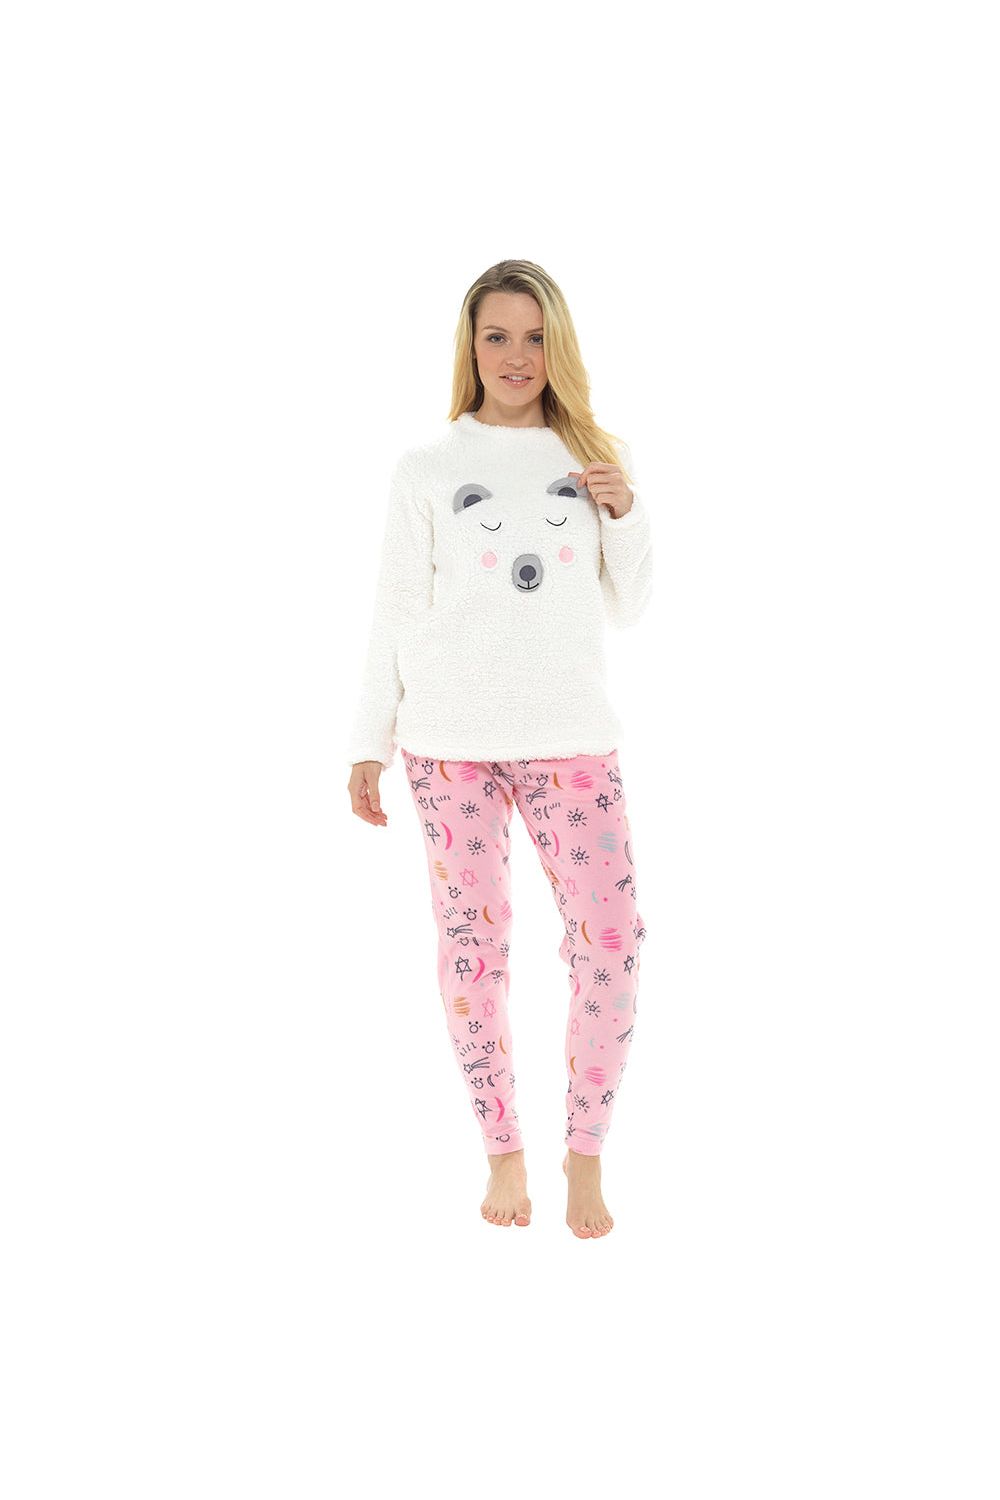 Women's Bear Fleece Top Twosie Pyjama Set Sleepwear